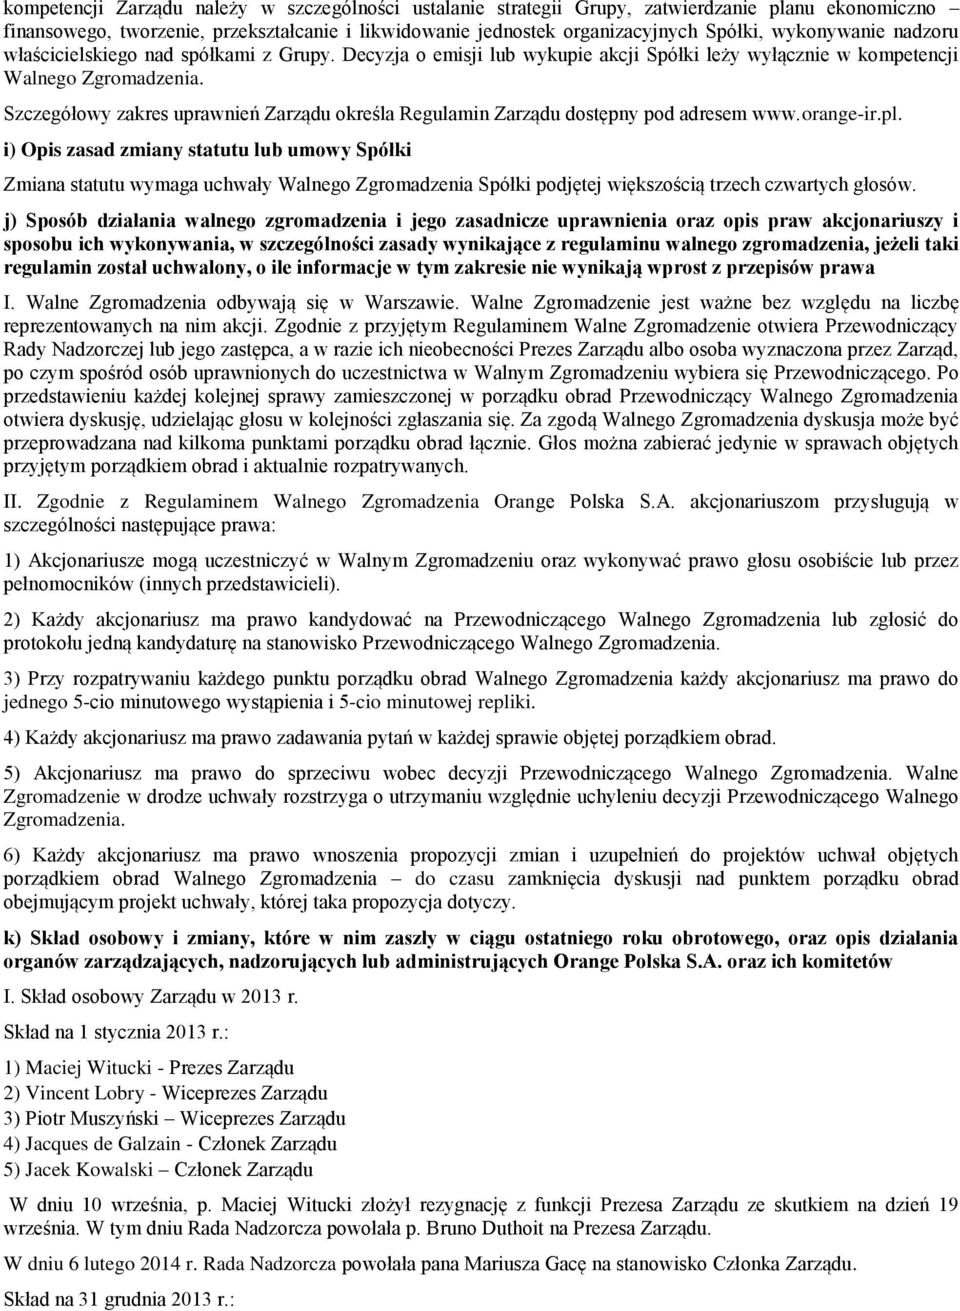 Szczegółowy zakres uprawnień Zarządu określa Regulamin Zarządu dostępny pod adresem www.orange-ir.pl.